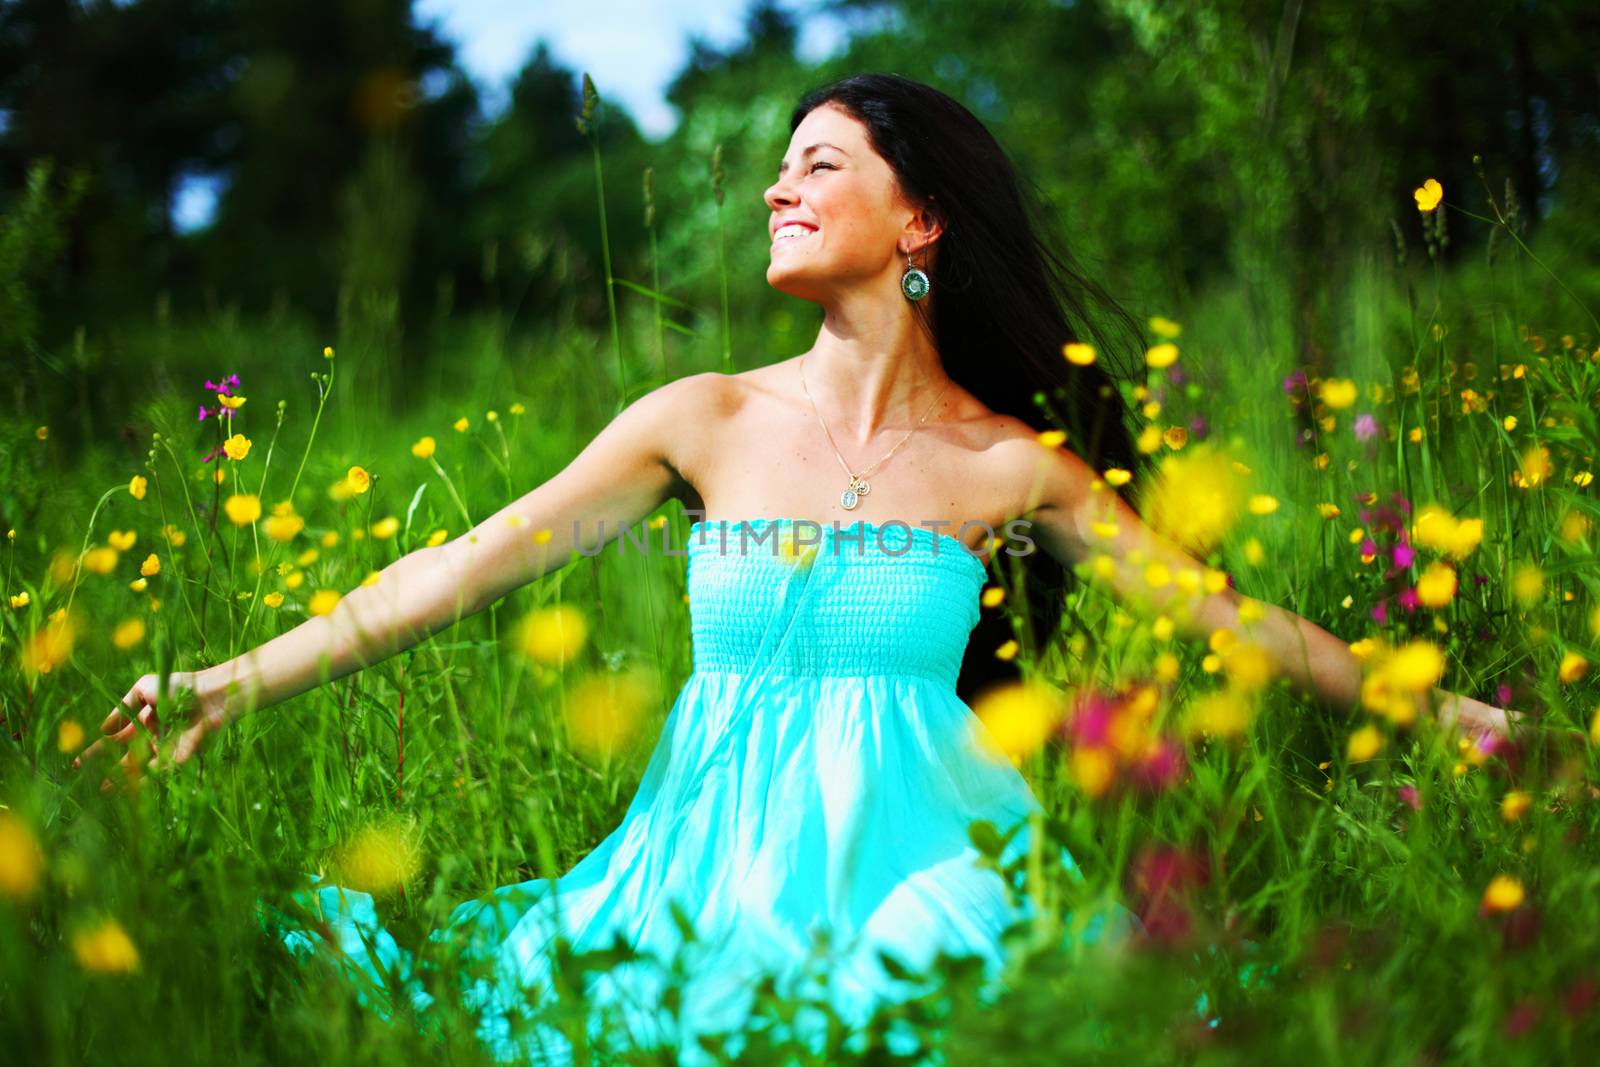 woman on summer flower field feel freedom